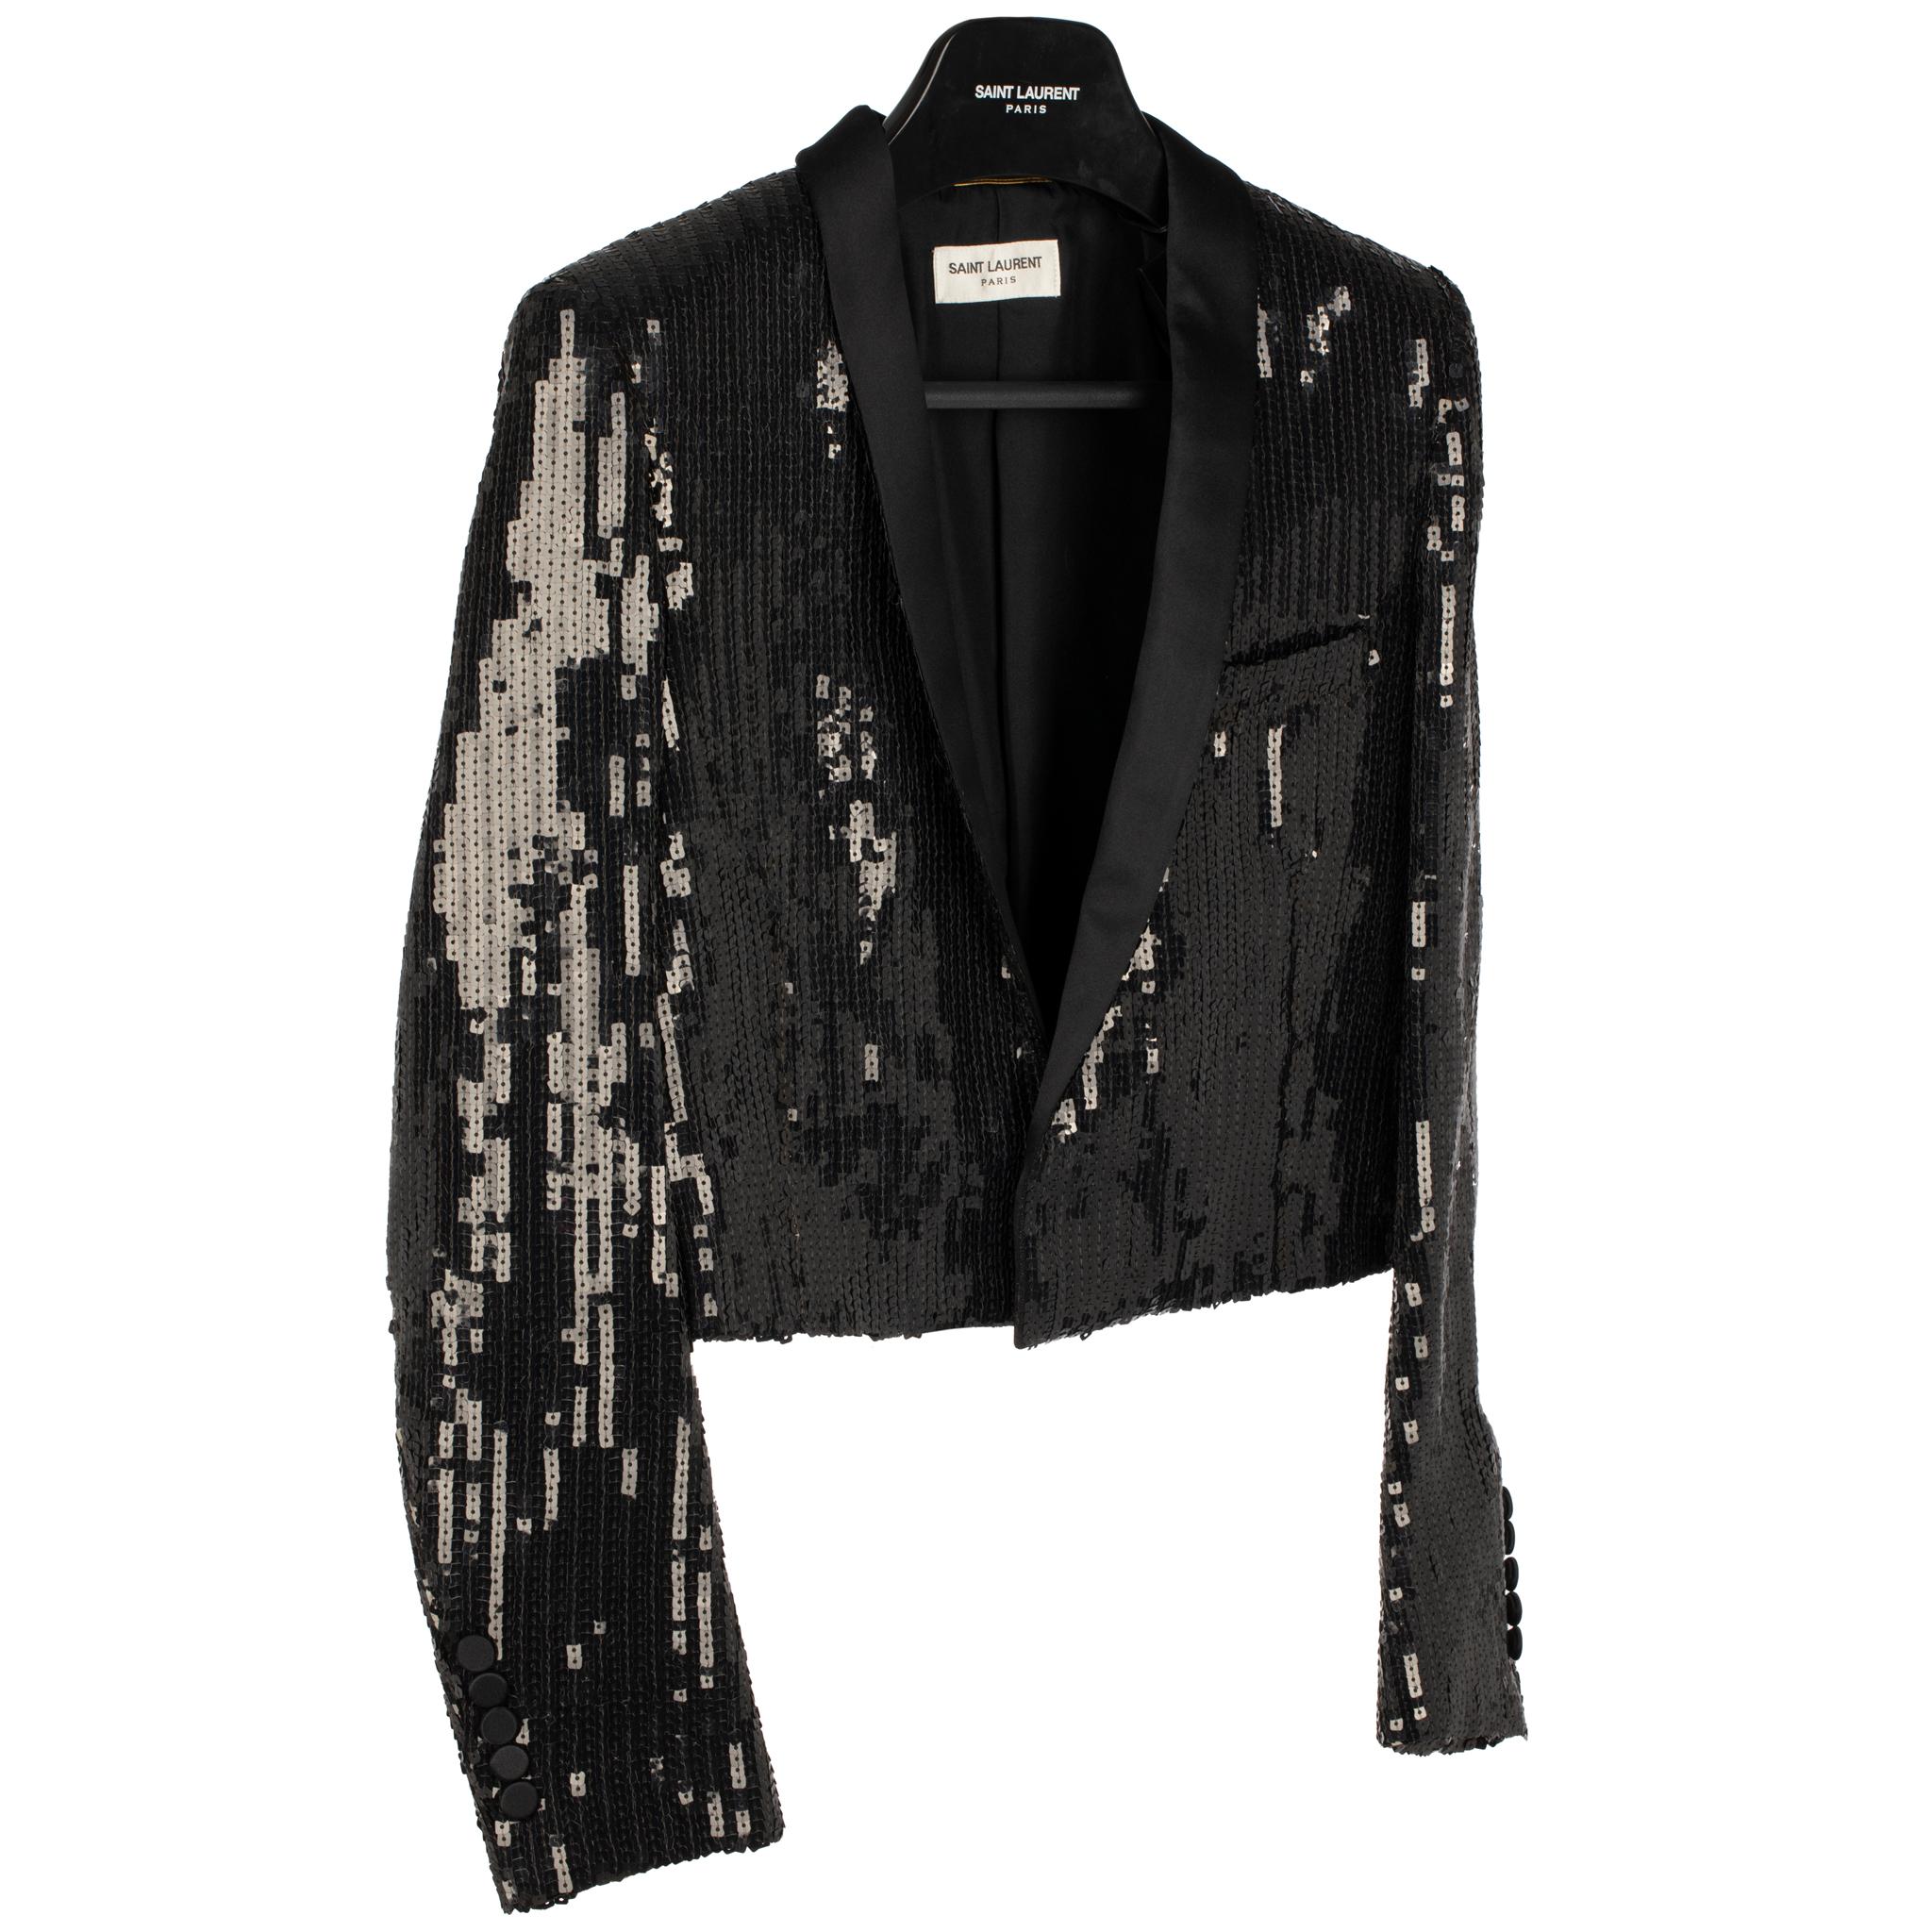 Faites preuve d'audace avec cette veste de soirée Yves Saint Laurent. Coupé dans un tissu noir à paillettes, il ajoute une touche de style à votre soirée en ville. Entièrement doublé, ce blazer ne manquera pas de vous accompagner lors de votre